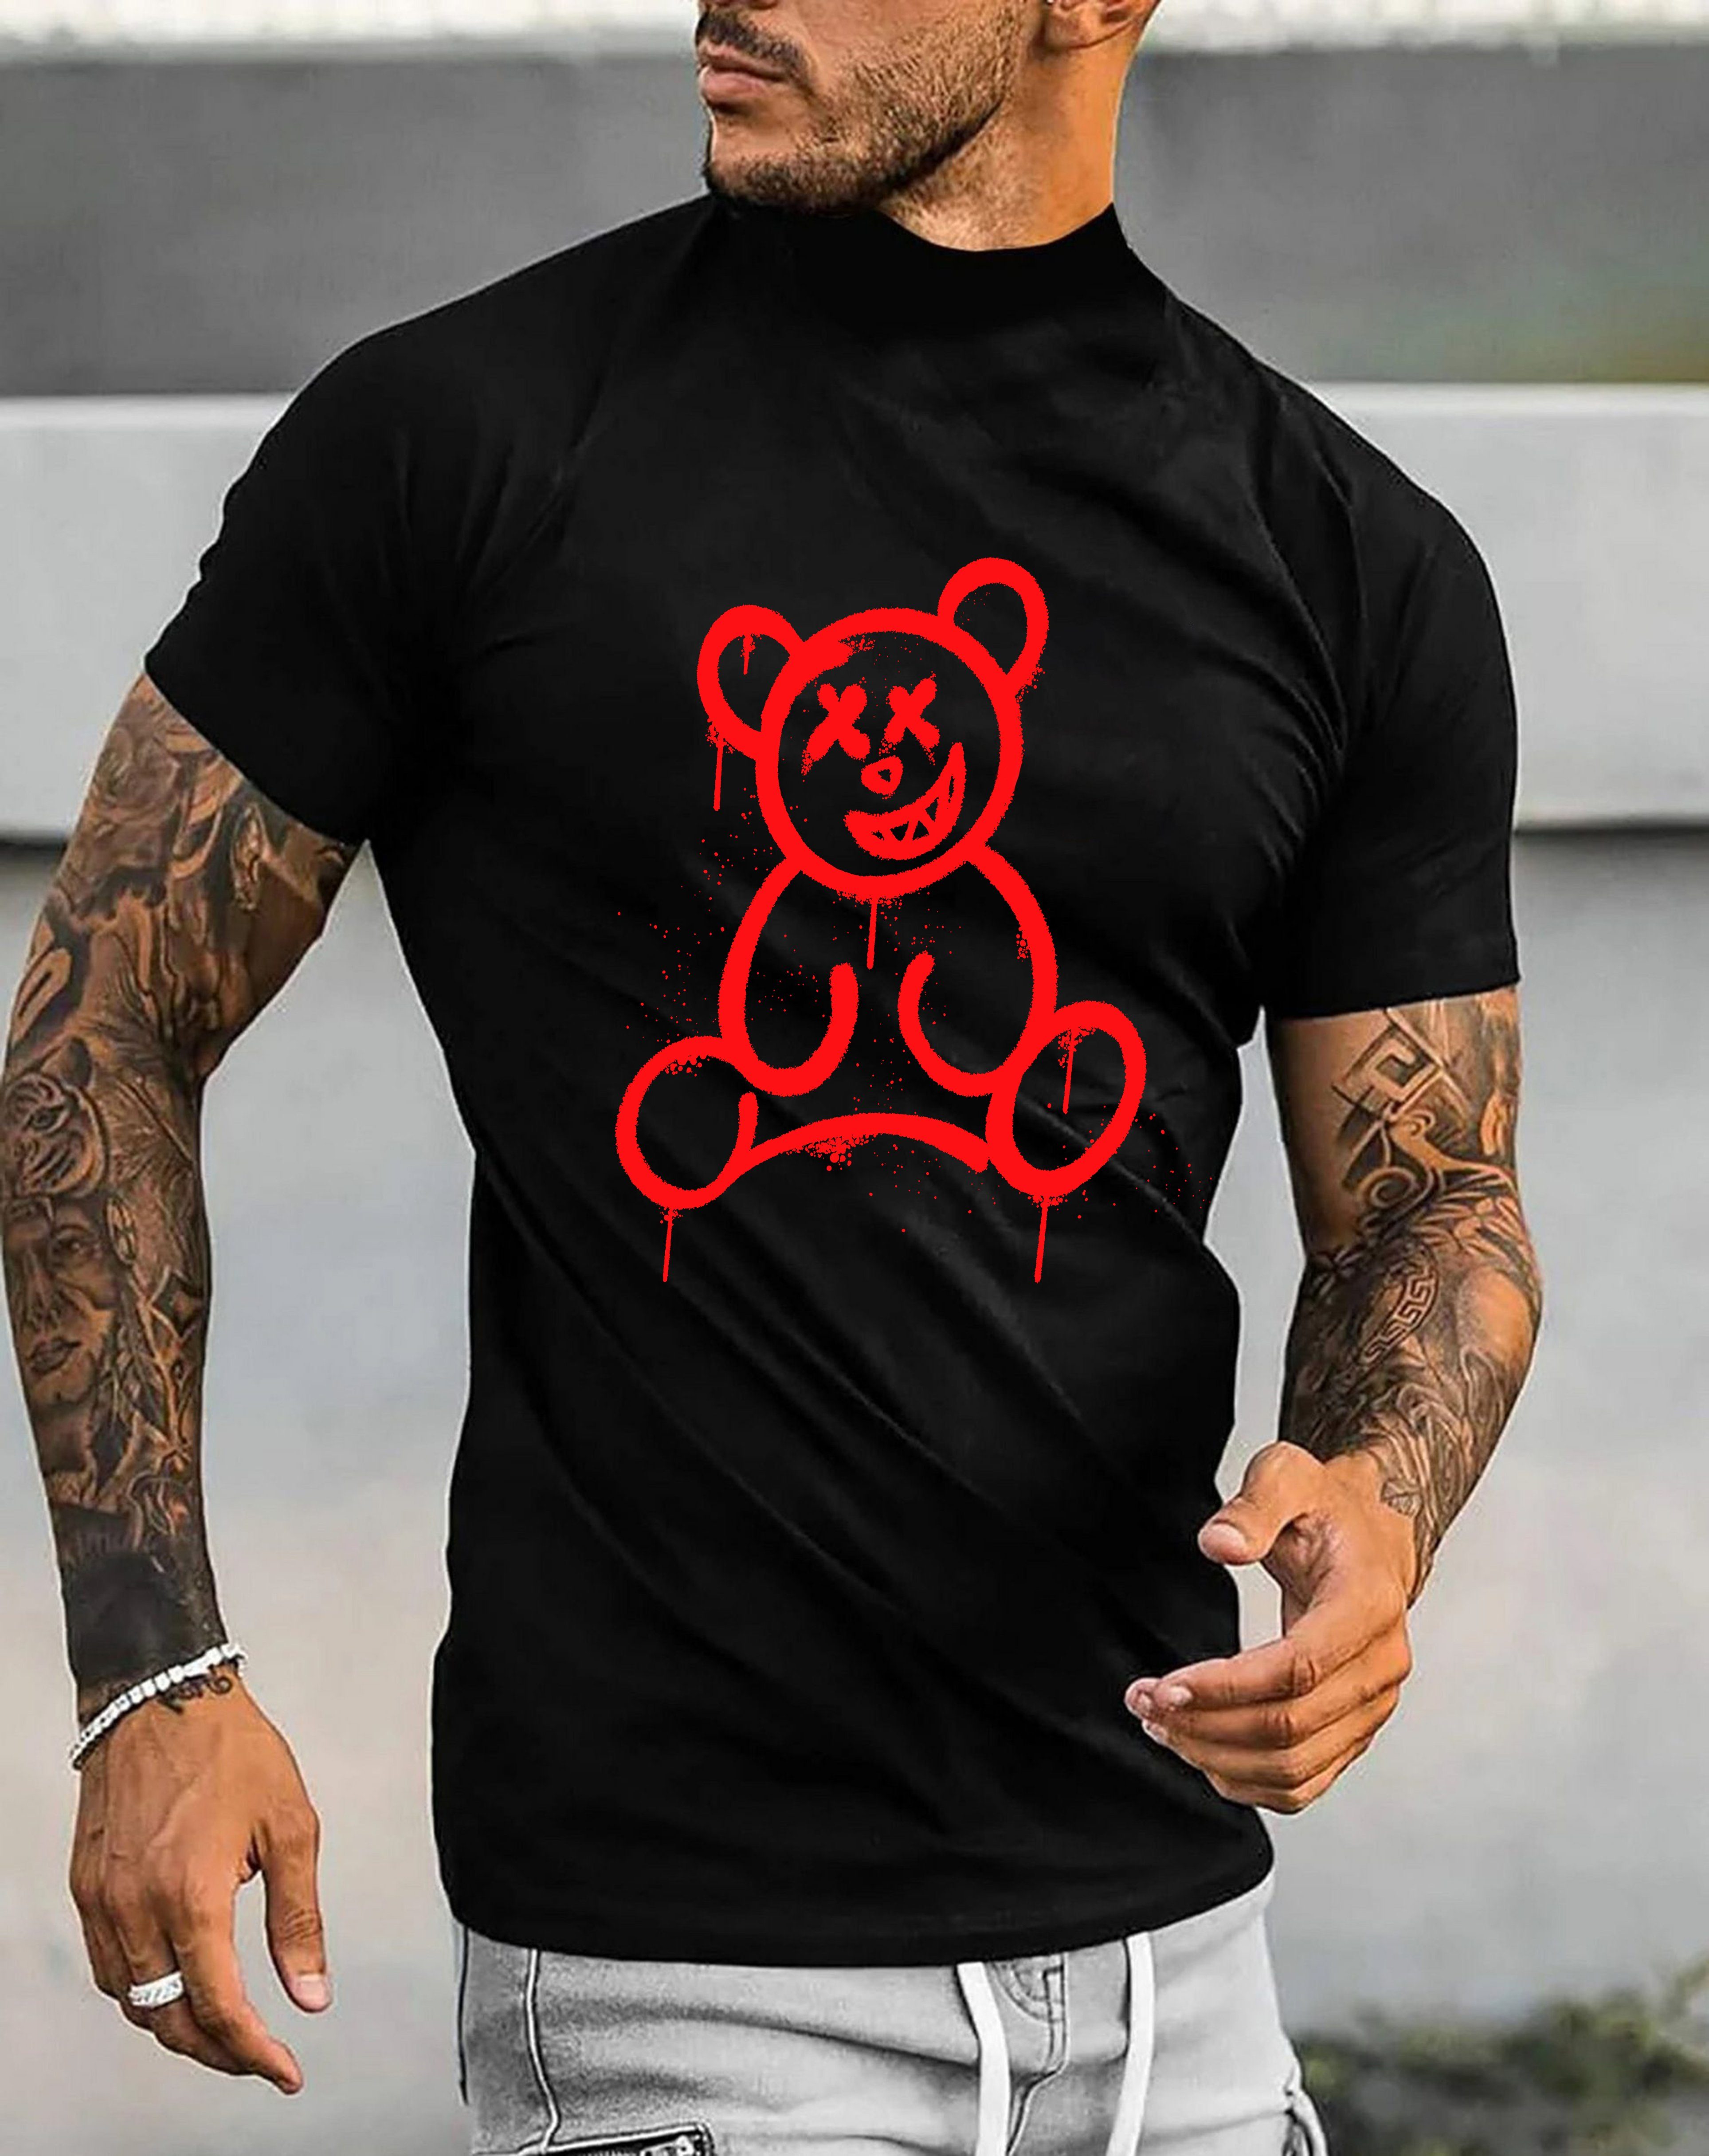 Herren Shirt mit Smiley Bärendruck Unifarbe, Baumwolle, in Schwarz-Rot lizenziertem Print aus RMK T-Shirt mit Bear